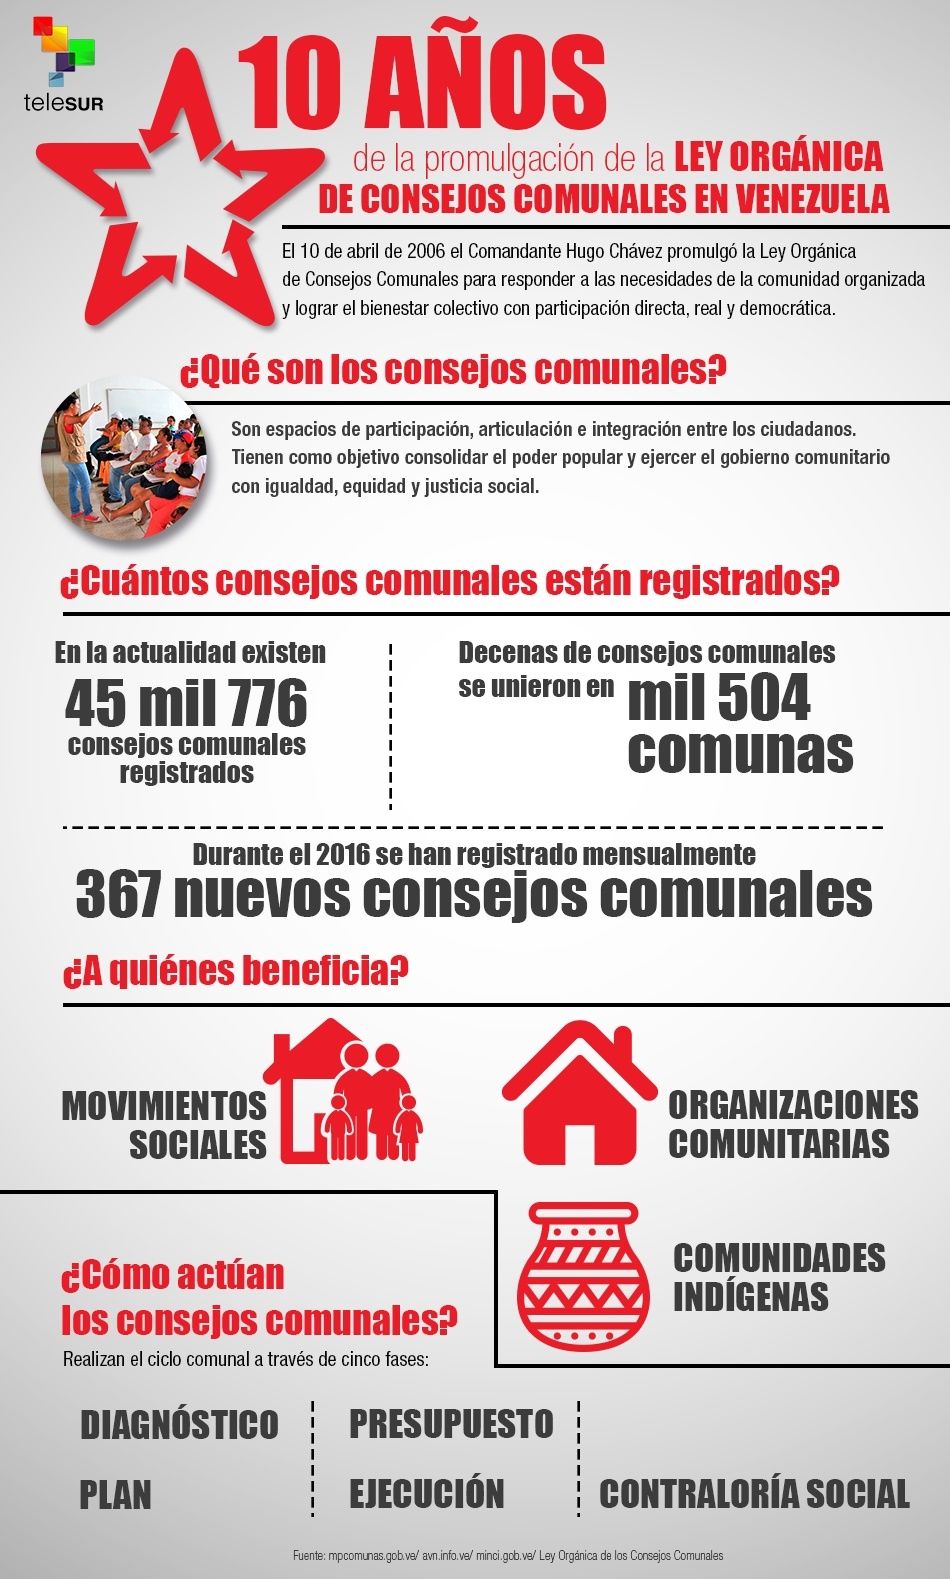 ¿Qué son los consejos comunales en Venezuela?